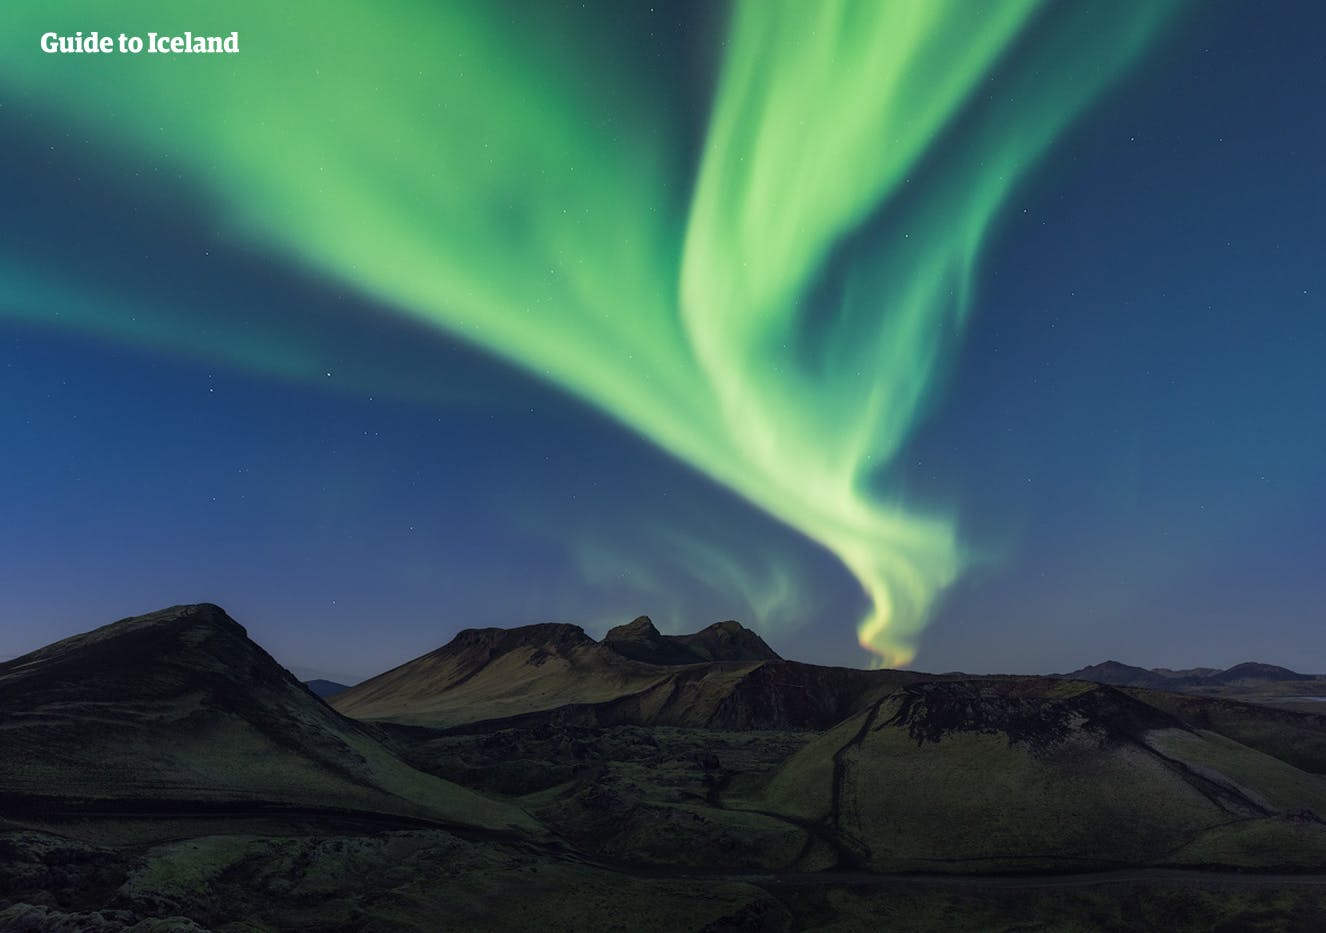 Las excursiones de auroras boreales se realizan en tierra y mar, y ambas opciones brindan una gran oportunidad de detectar las increíbles auroras.